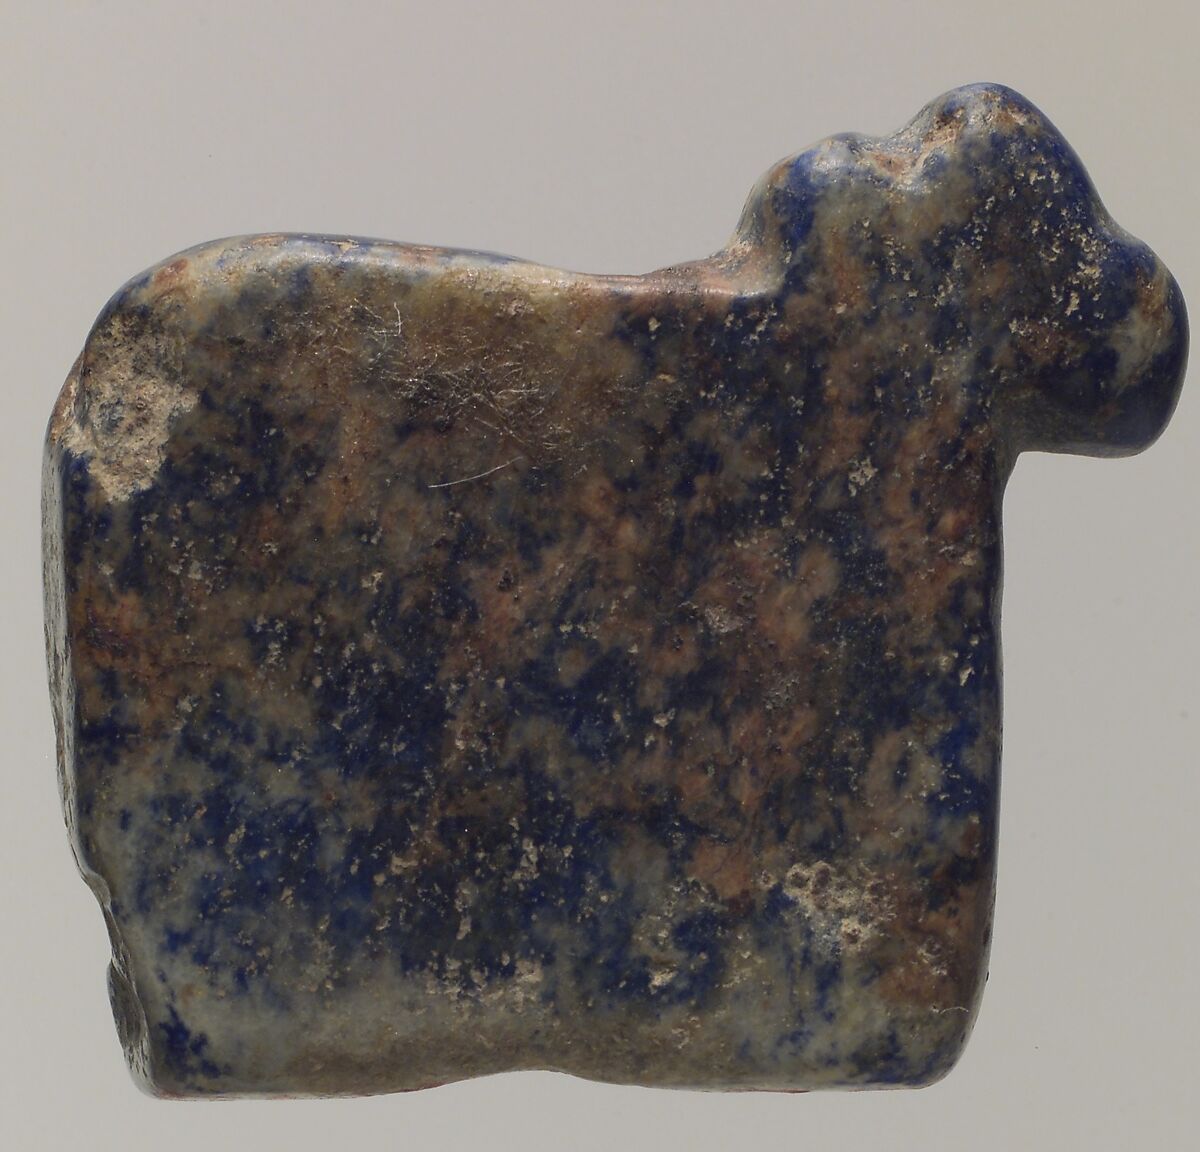 Cow amulet, Lapis lazuli, Sumerian 